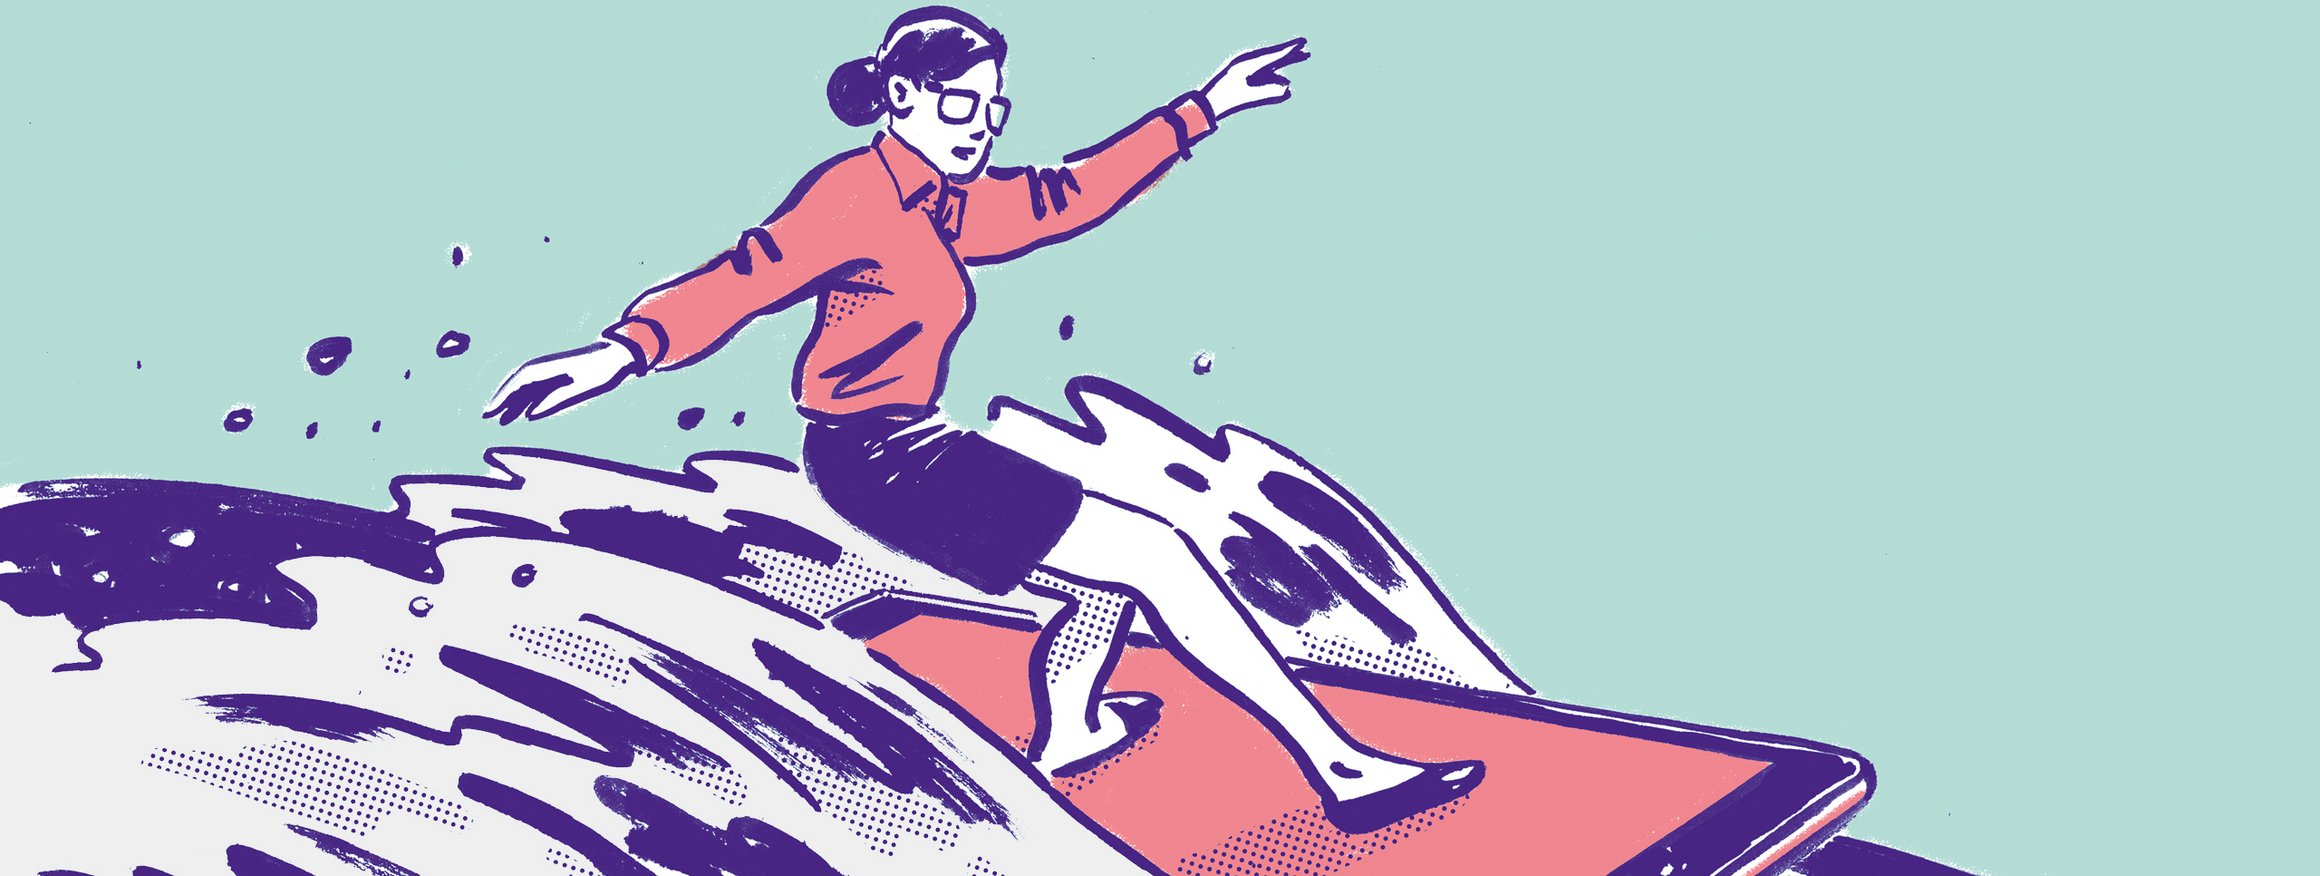 Eine Frau im Business-Look surft lässig auf einem Smartphone als Surfbrett auf einer großen Welle